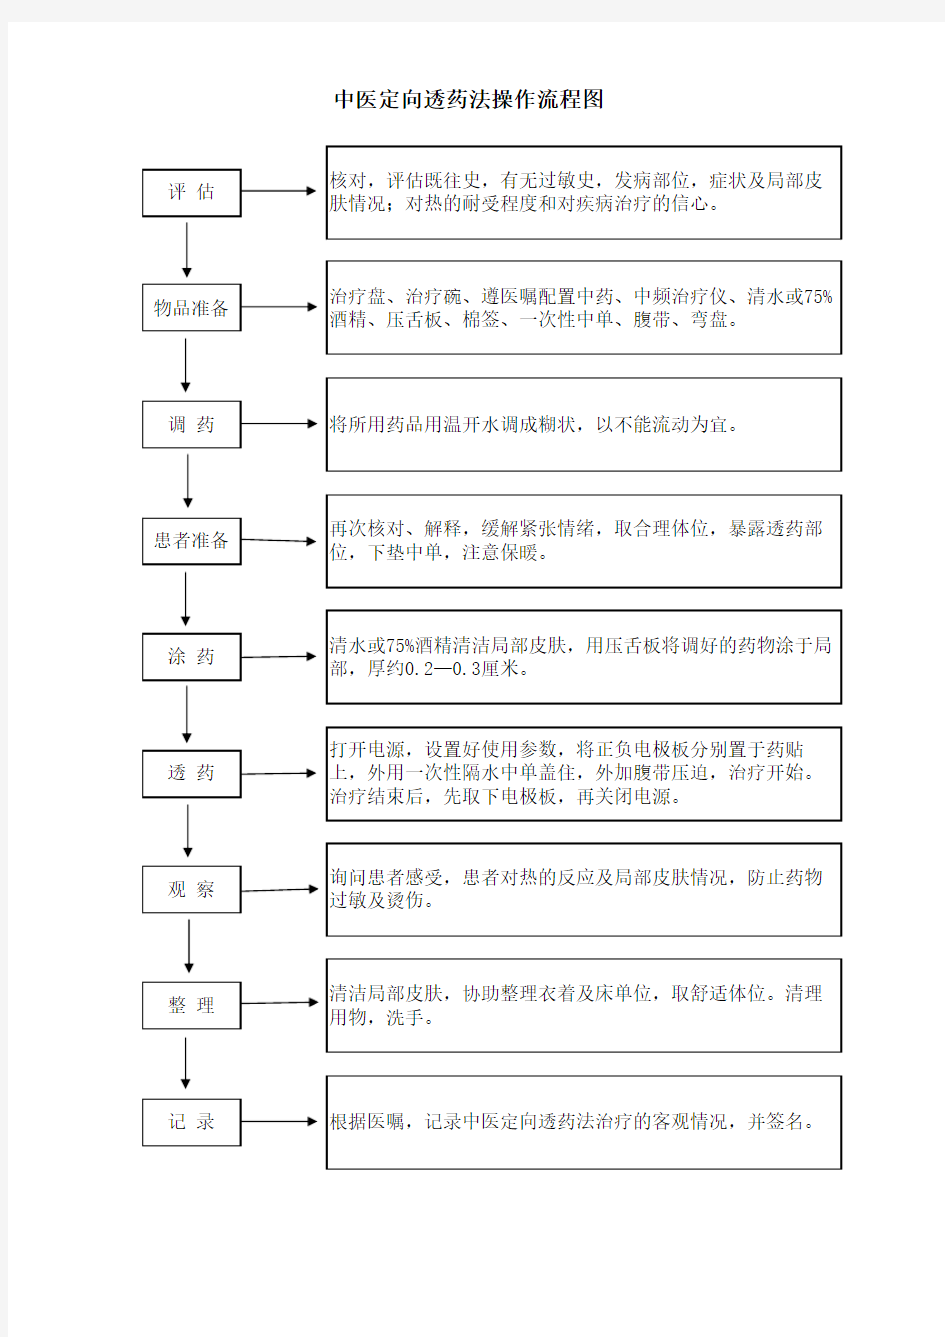 中医操作流程图